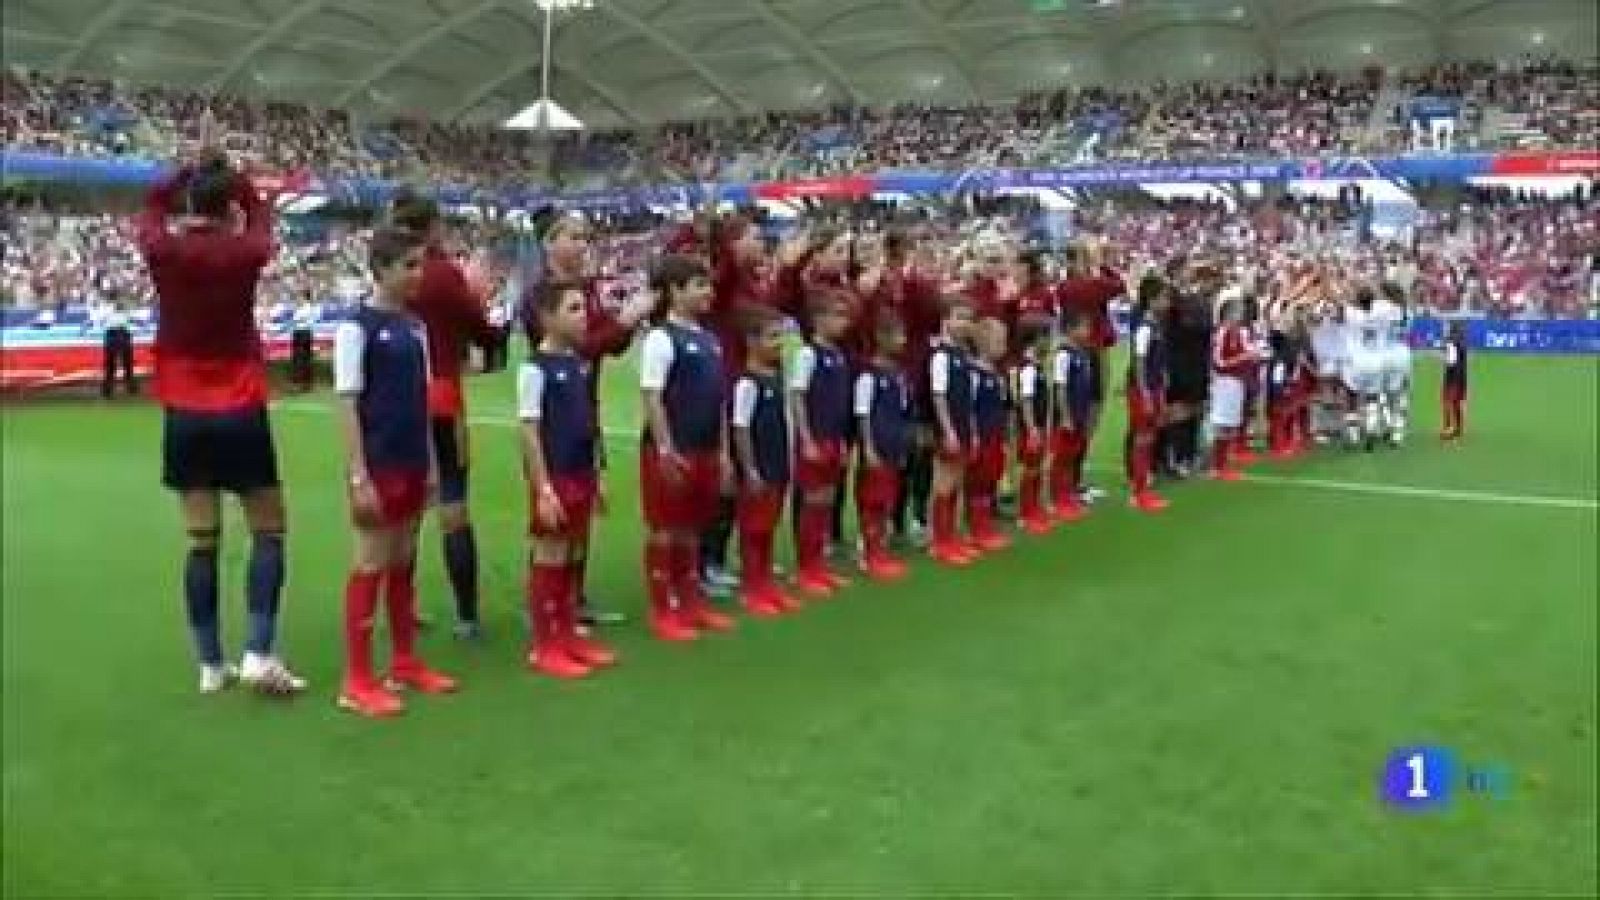 Tanto Jorge Vilda como las internacionales españolas han mostrado su "orgullo" tras haber caído eliminada ante Estados Unidos en octavos de final del Mundial de Francia 2019.